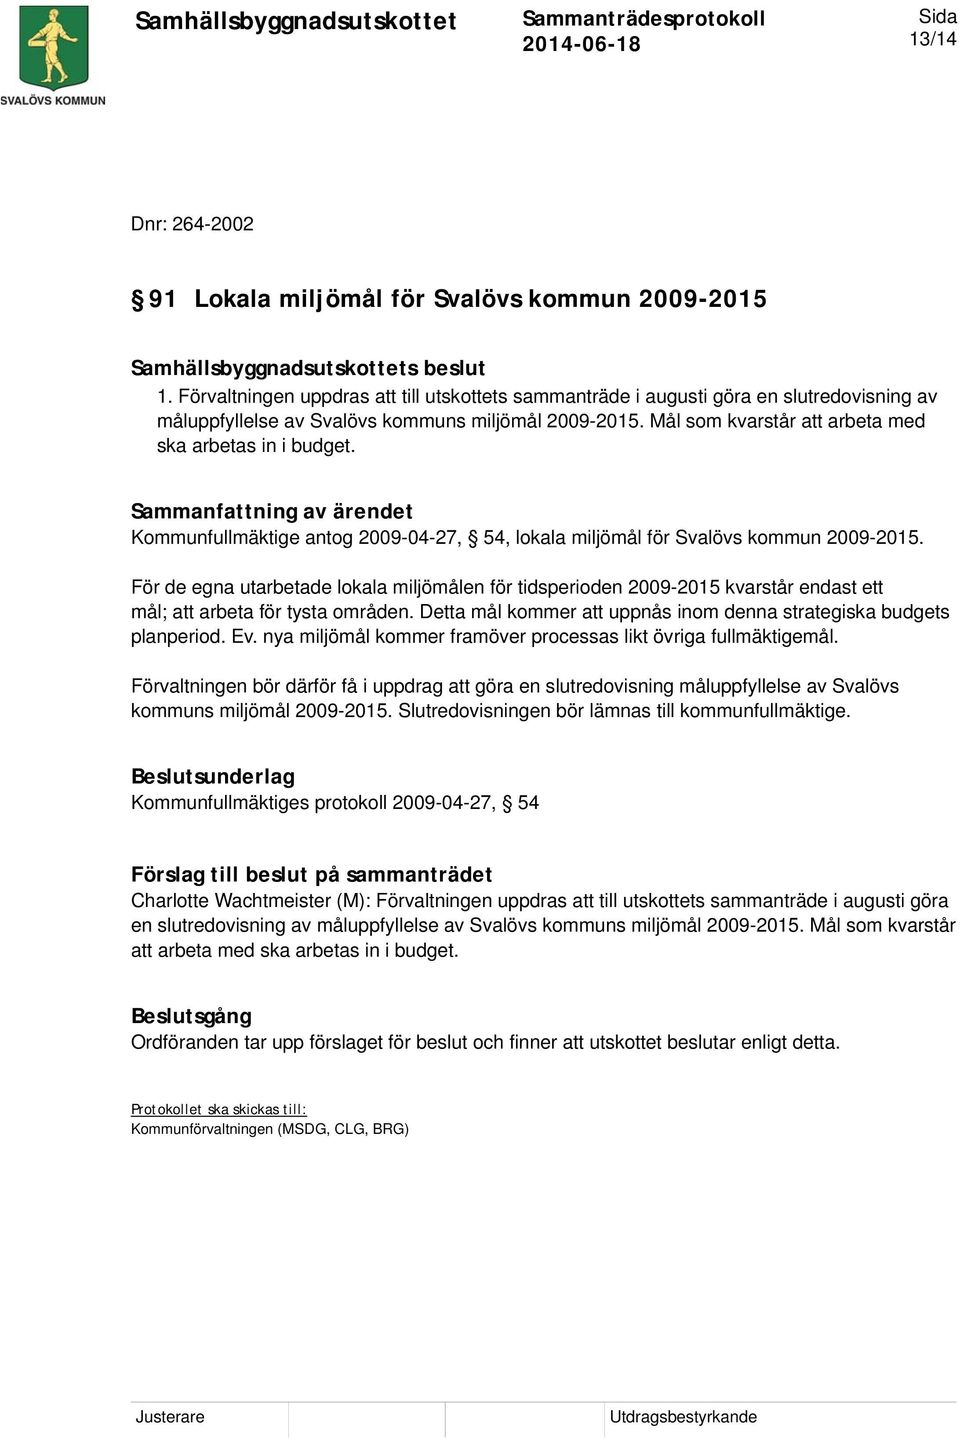 Mål som kvarstår att arbeta med ska arbetas in i budget. Kommunfullmäktige antog 2009-04-27, 54, lokala miljömål för Svalövs kommun 2009-2015.